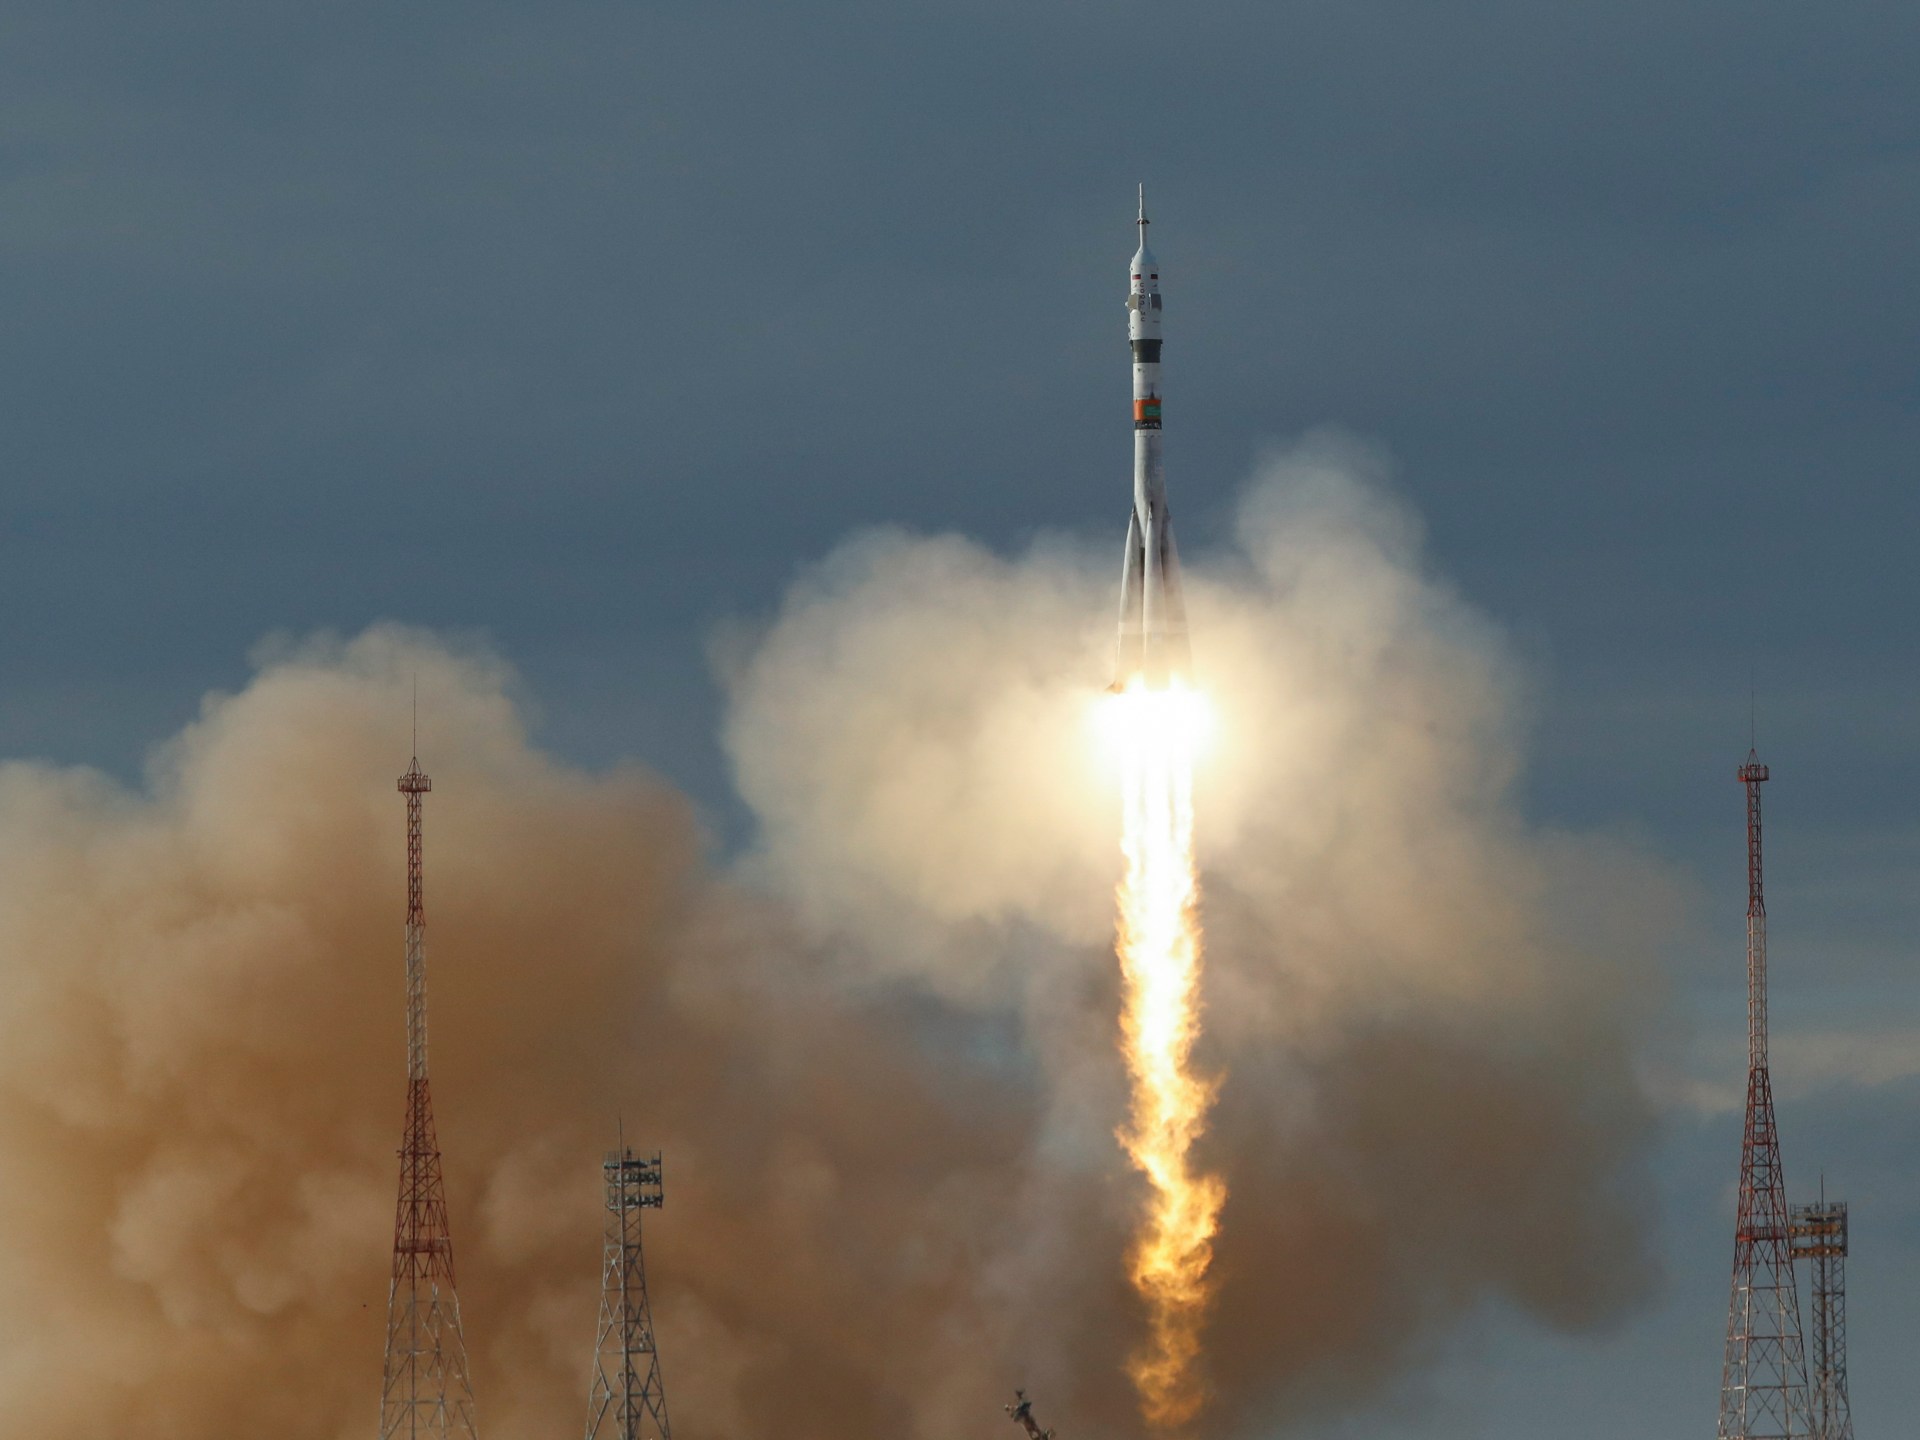 우주 비행사 3명을 태운 러시아 소유즈 로켓이 오작동이 발생한 지 며칠 만에 국제 우주 정거장으로 이륙했습니다.  우주 뉴스